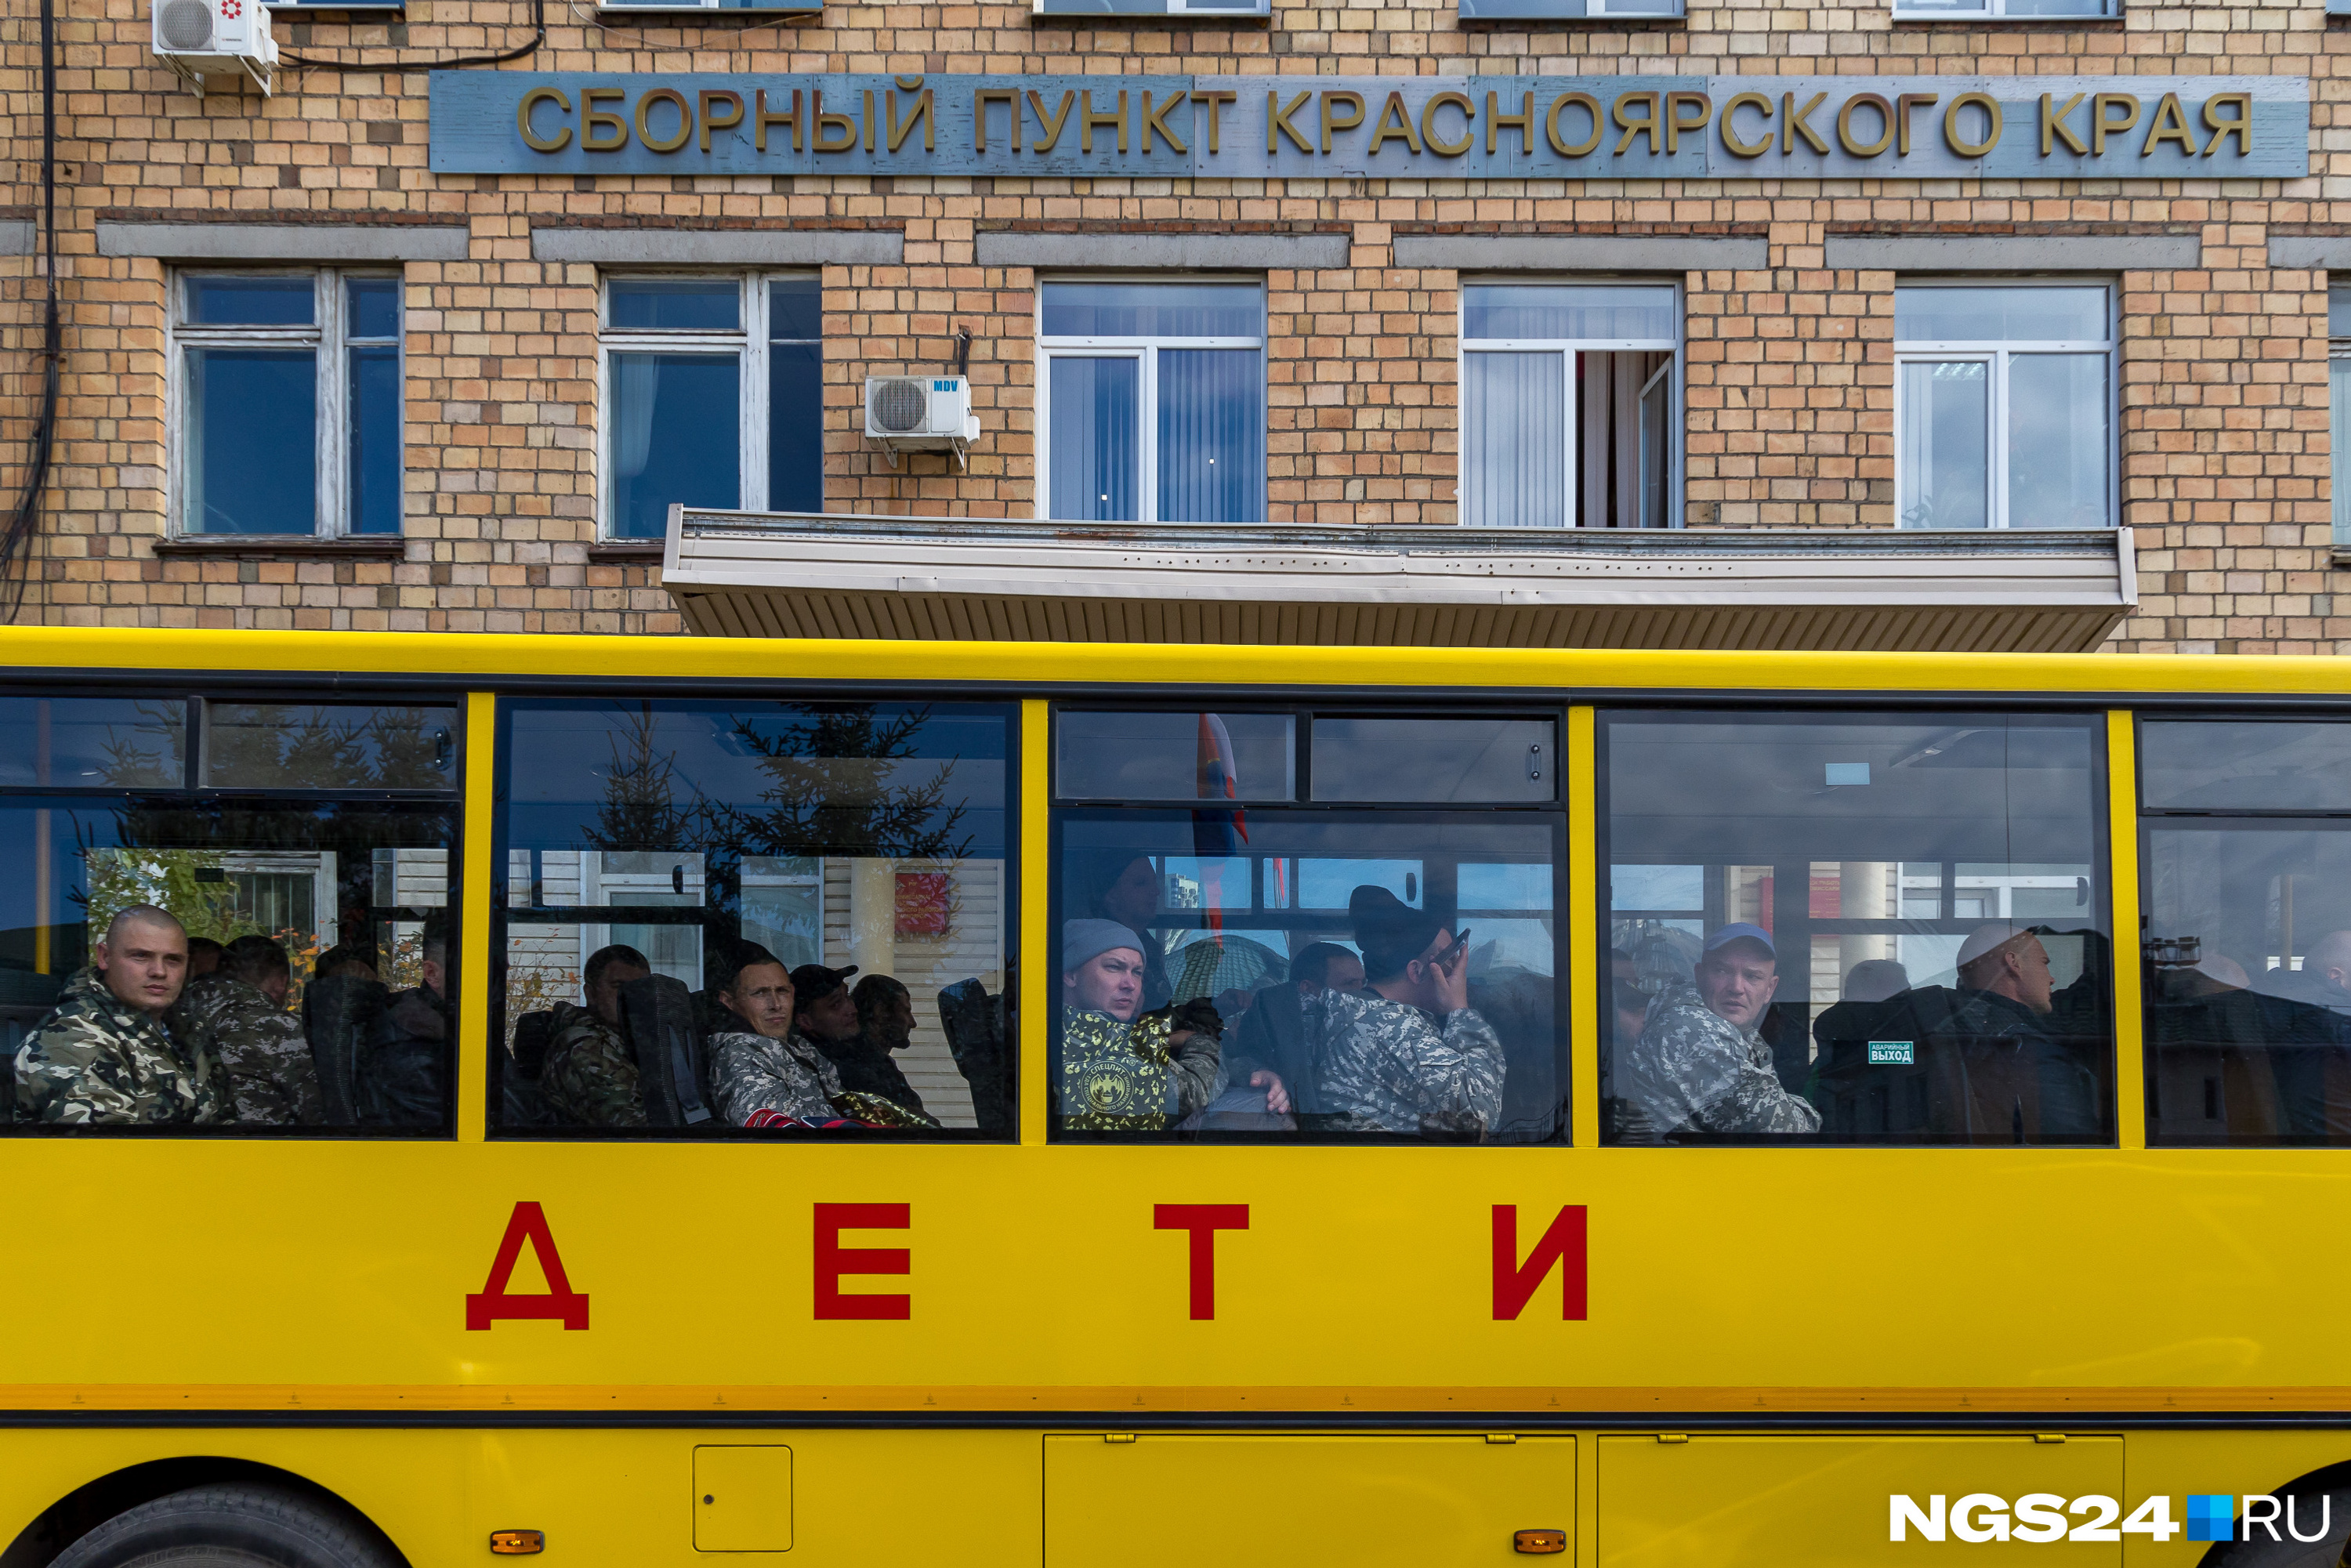 Обычно на этих автобусах развозят по школам детей из маленьких сёл и деревень